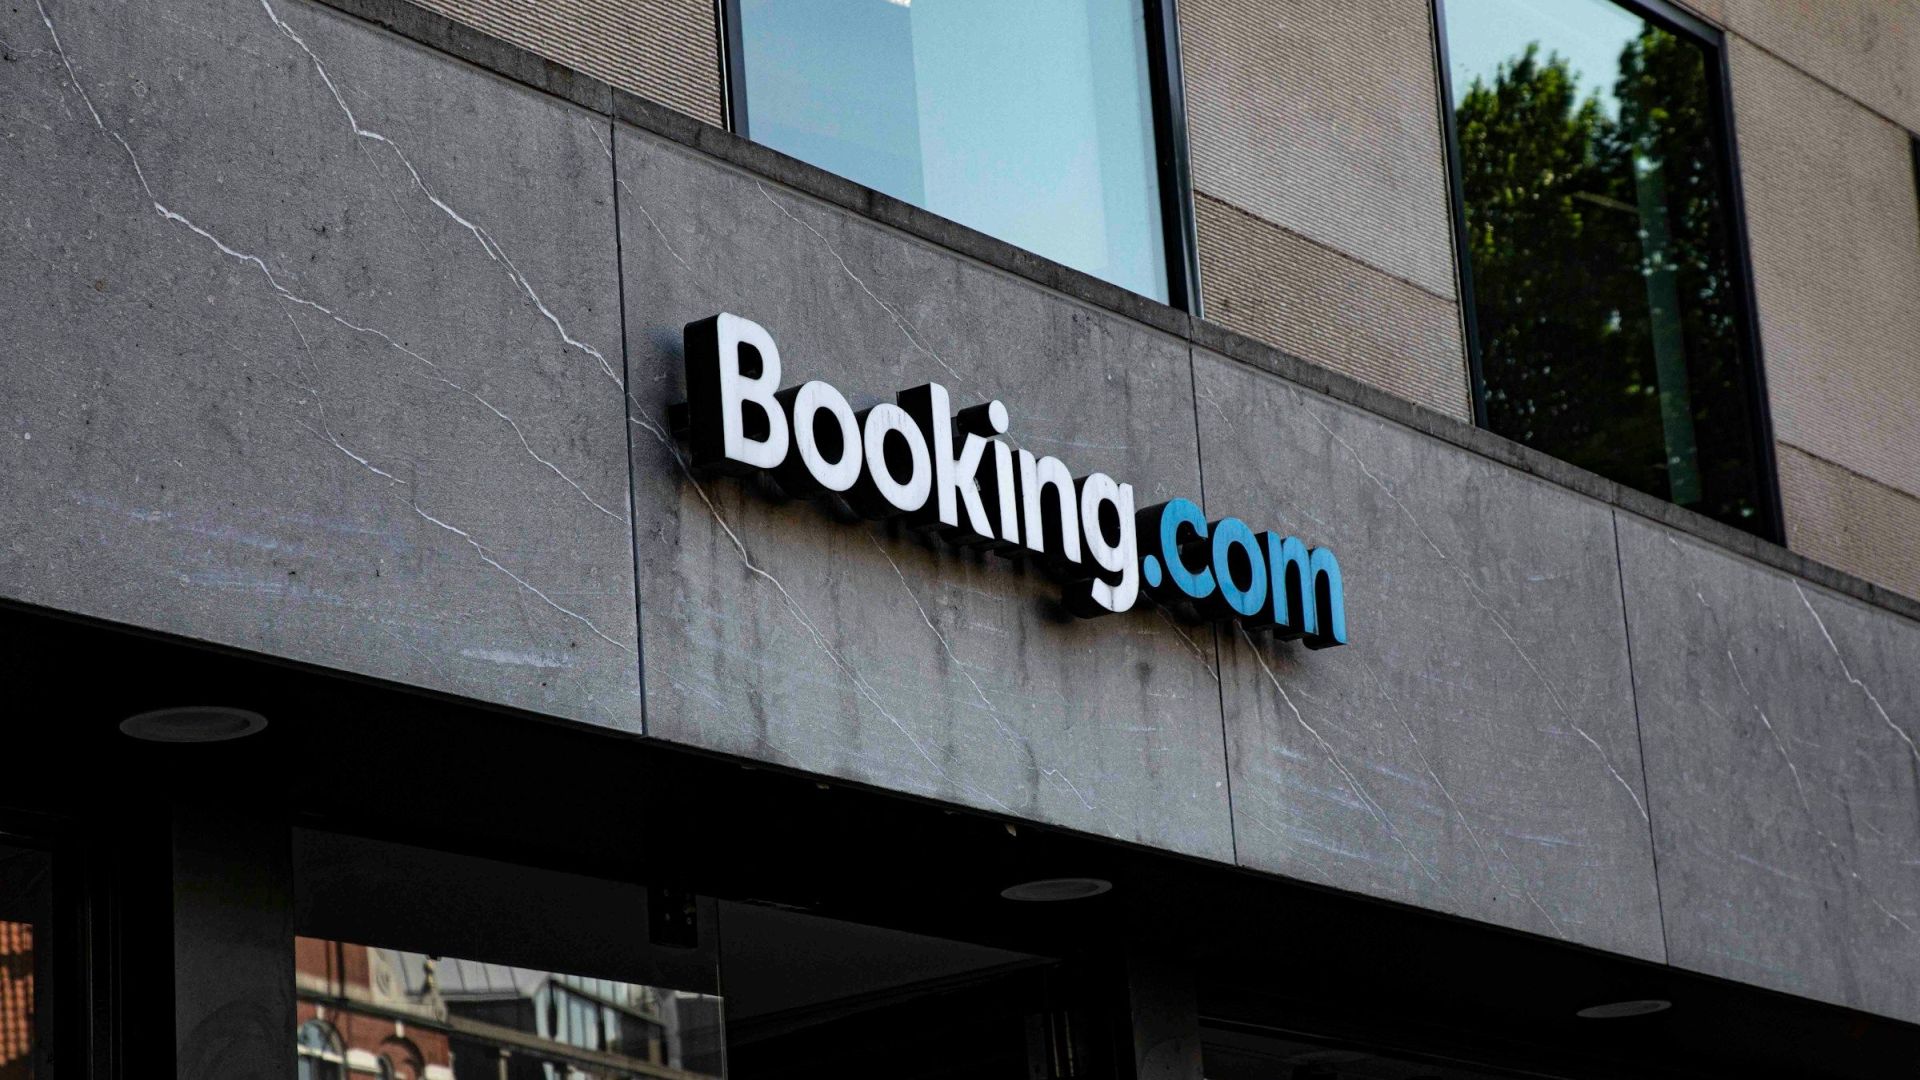 Booking.com - Building